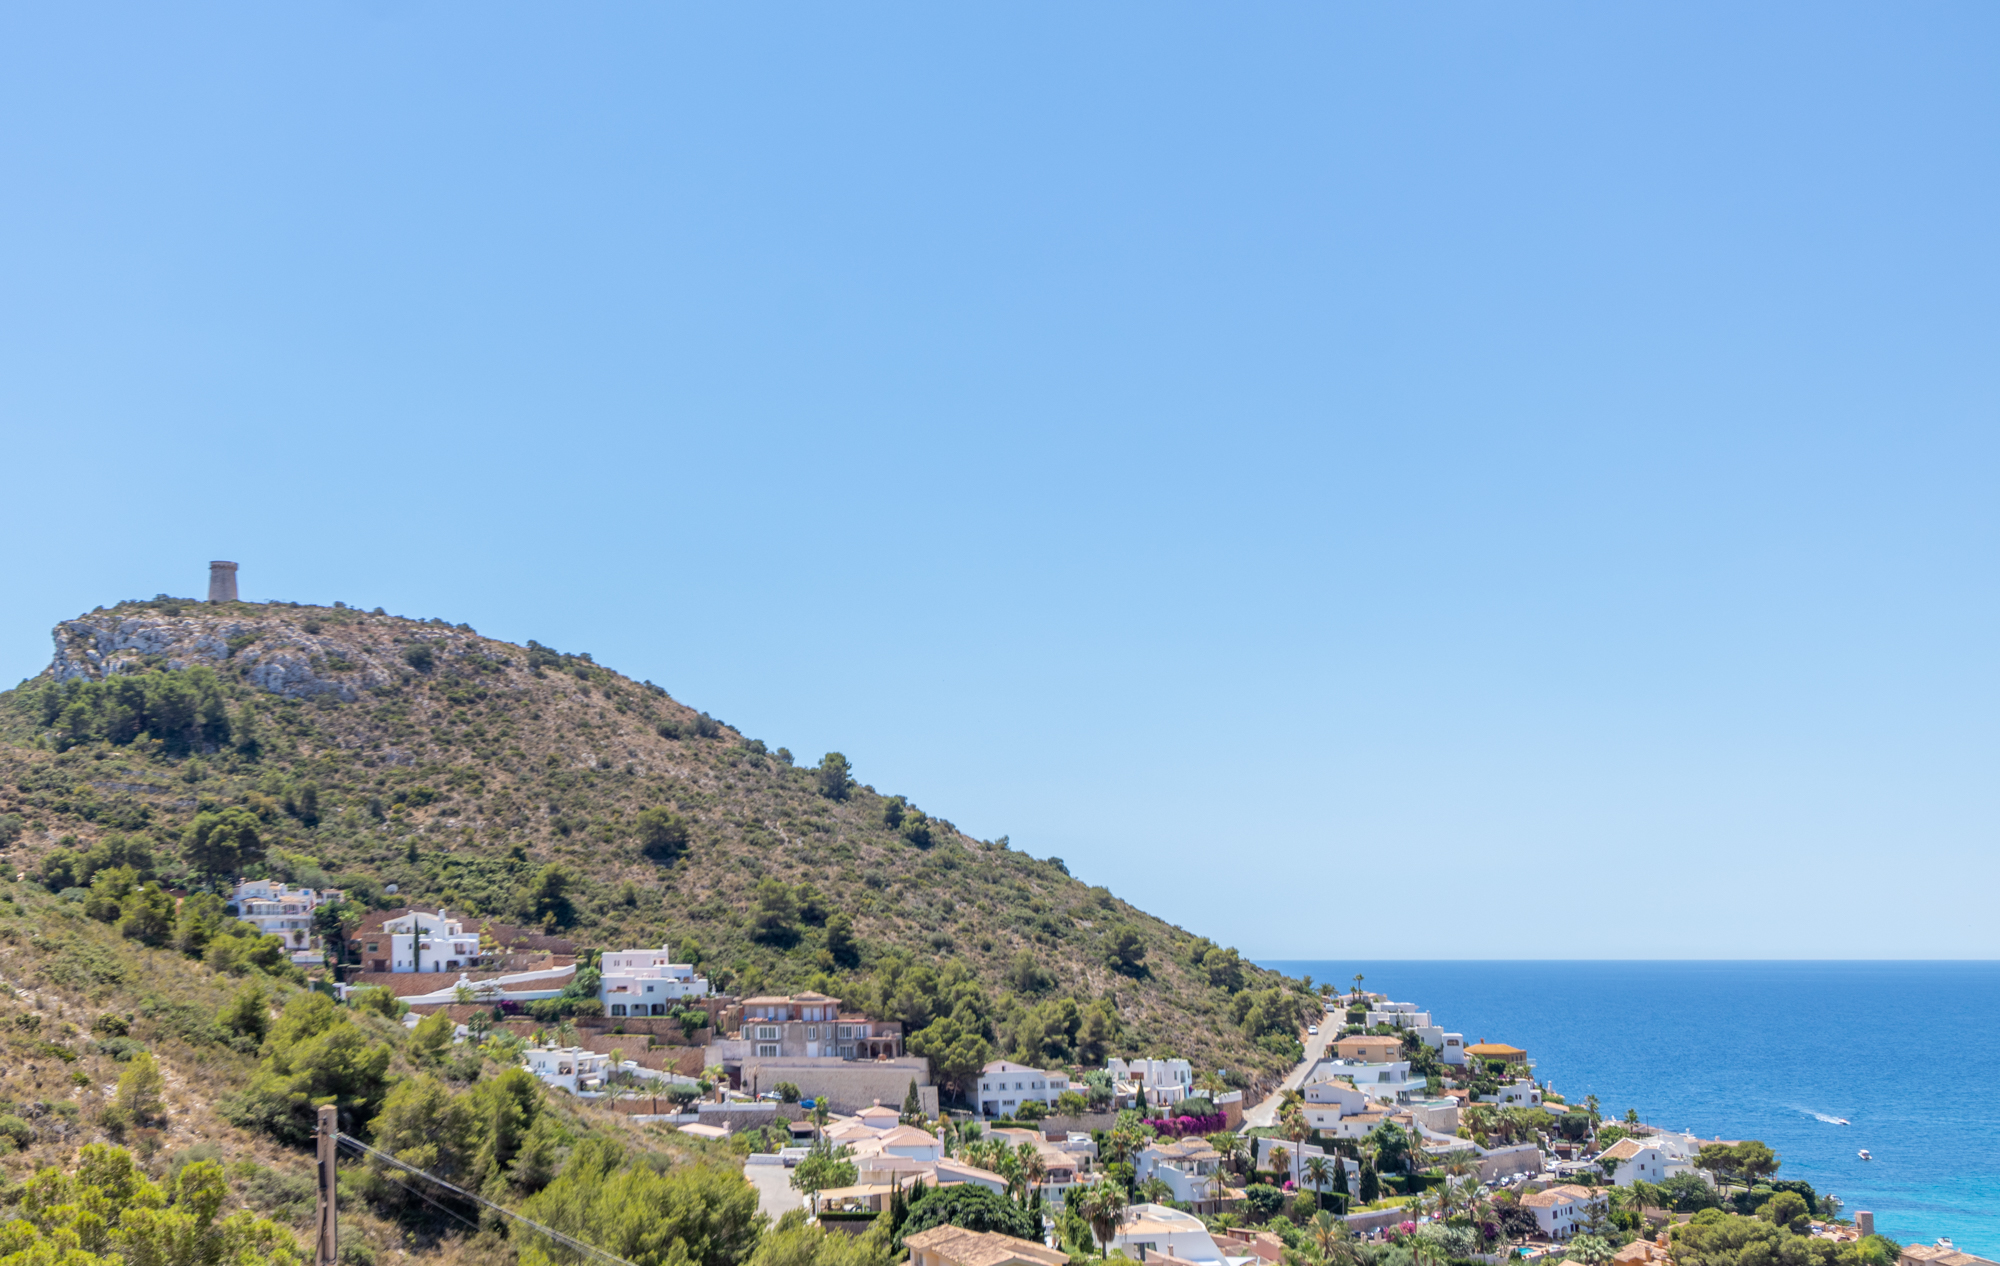 Espectacular villa estilo mediterráneo con vistas al mar en el Portet de Moraira